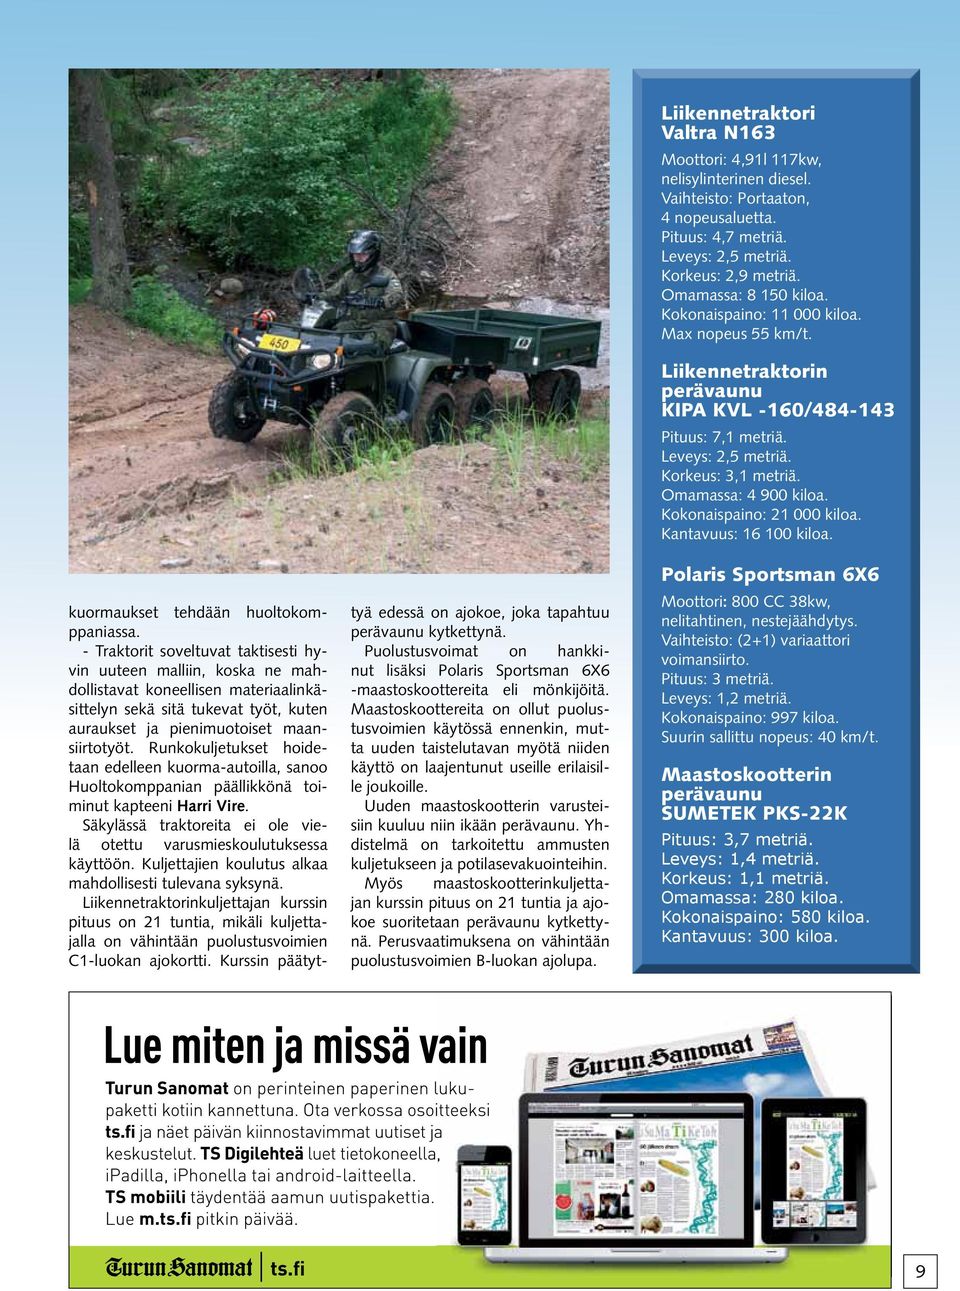 Runkokuljetukset hoidetaan edelleen kuorma-autoilla, sanoo Huoltokomppanian päällikkönä toiminut kapteeni Harri Vire. Säkylässä traktoreita ei ole vielä otettu varusmieskoulutuksessa käyttöön.